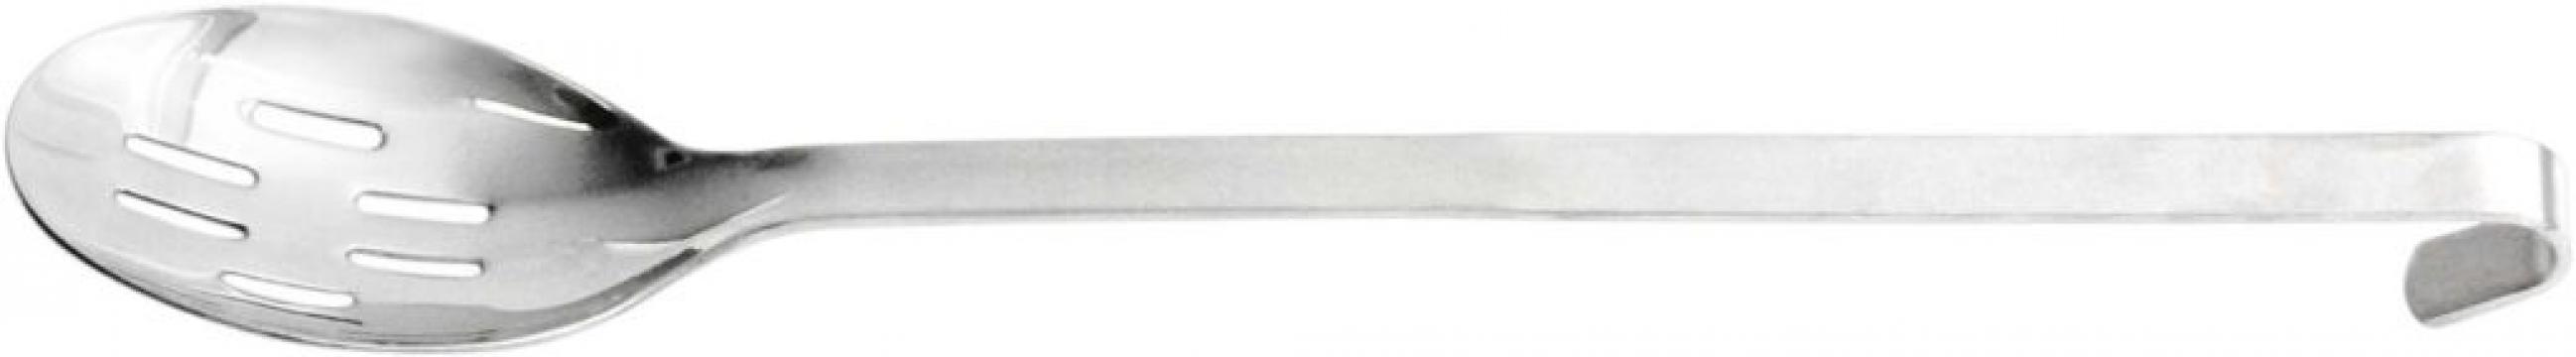 Lingura inox servire perforata monobloc 40 cm